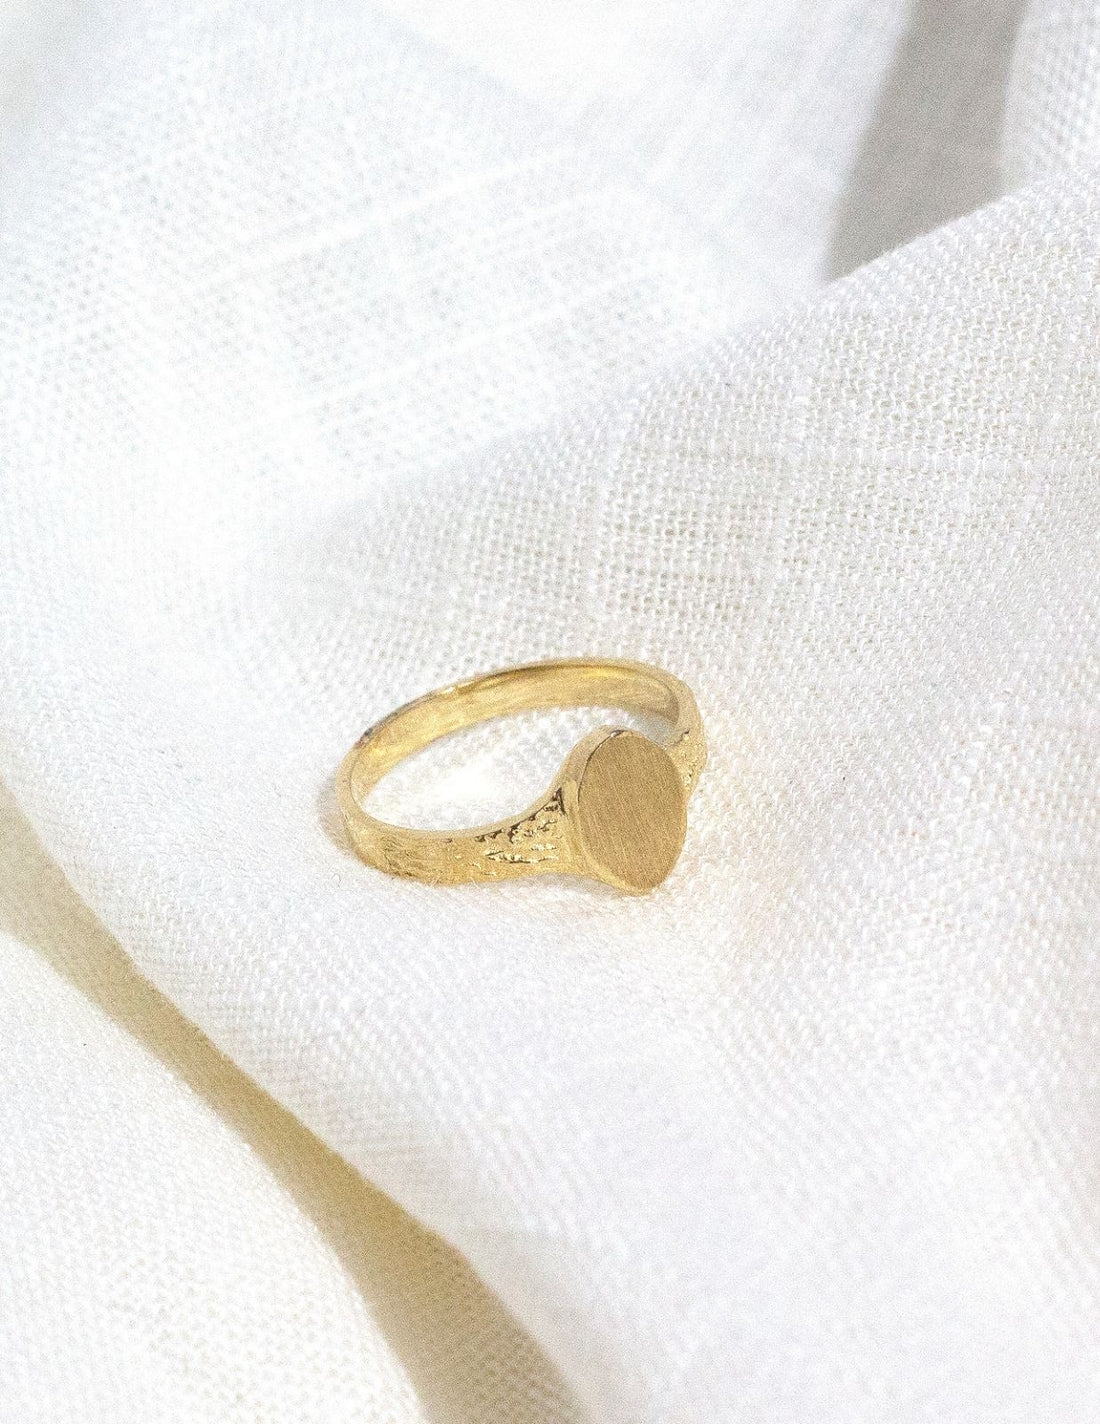  10k gold ring vintage, 10k solid gold ring